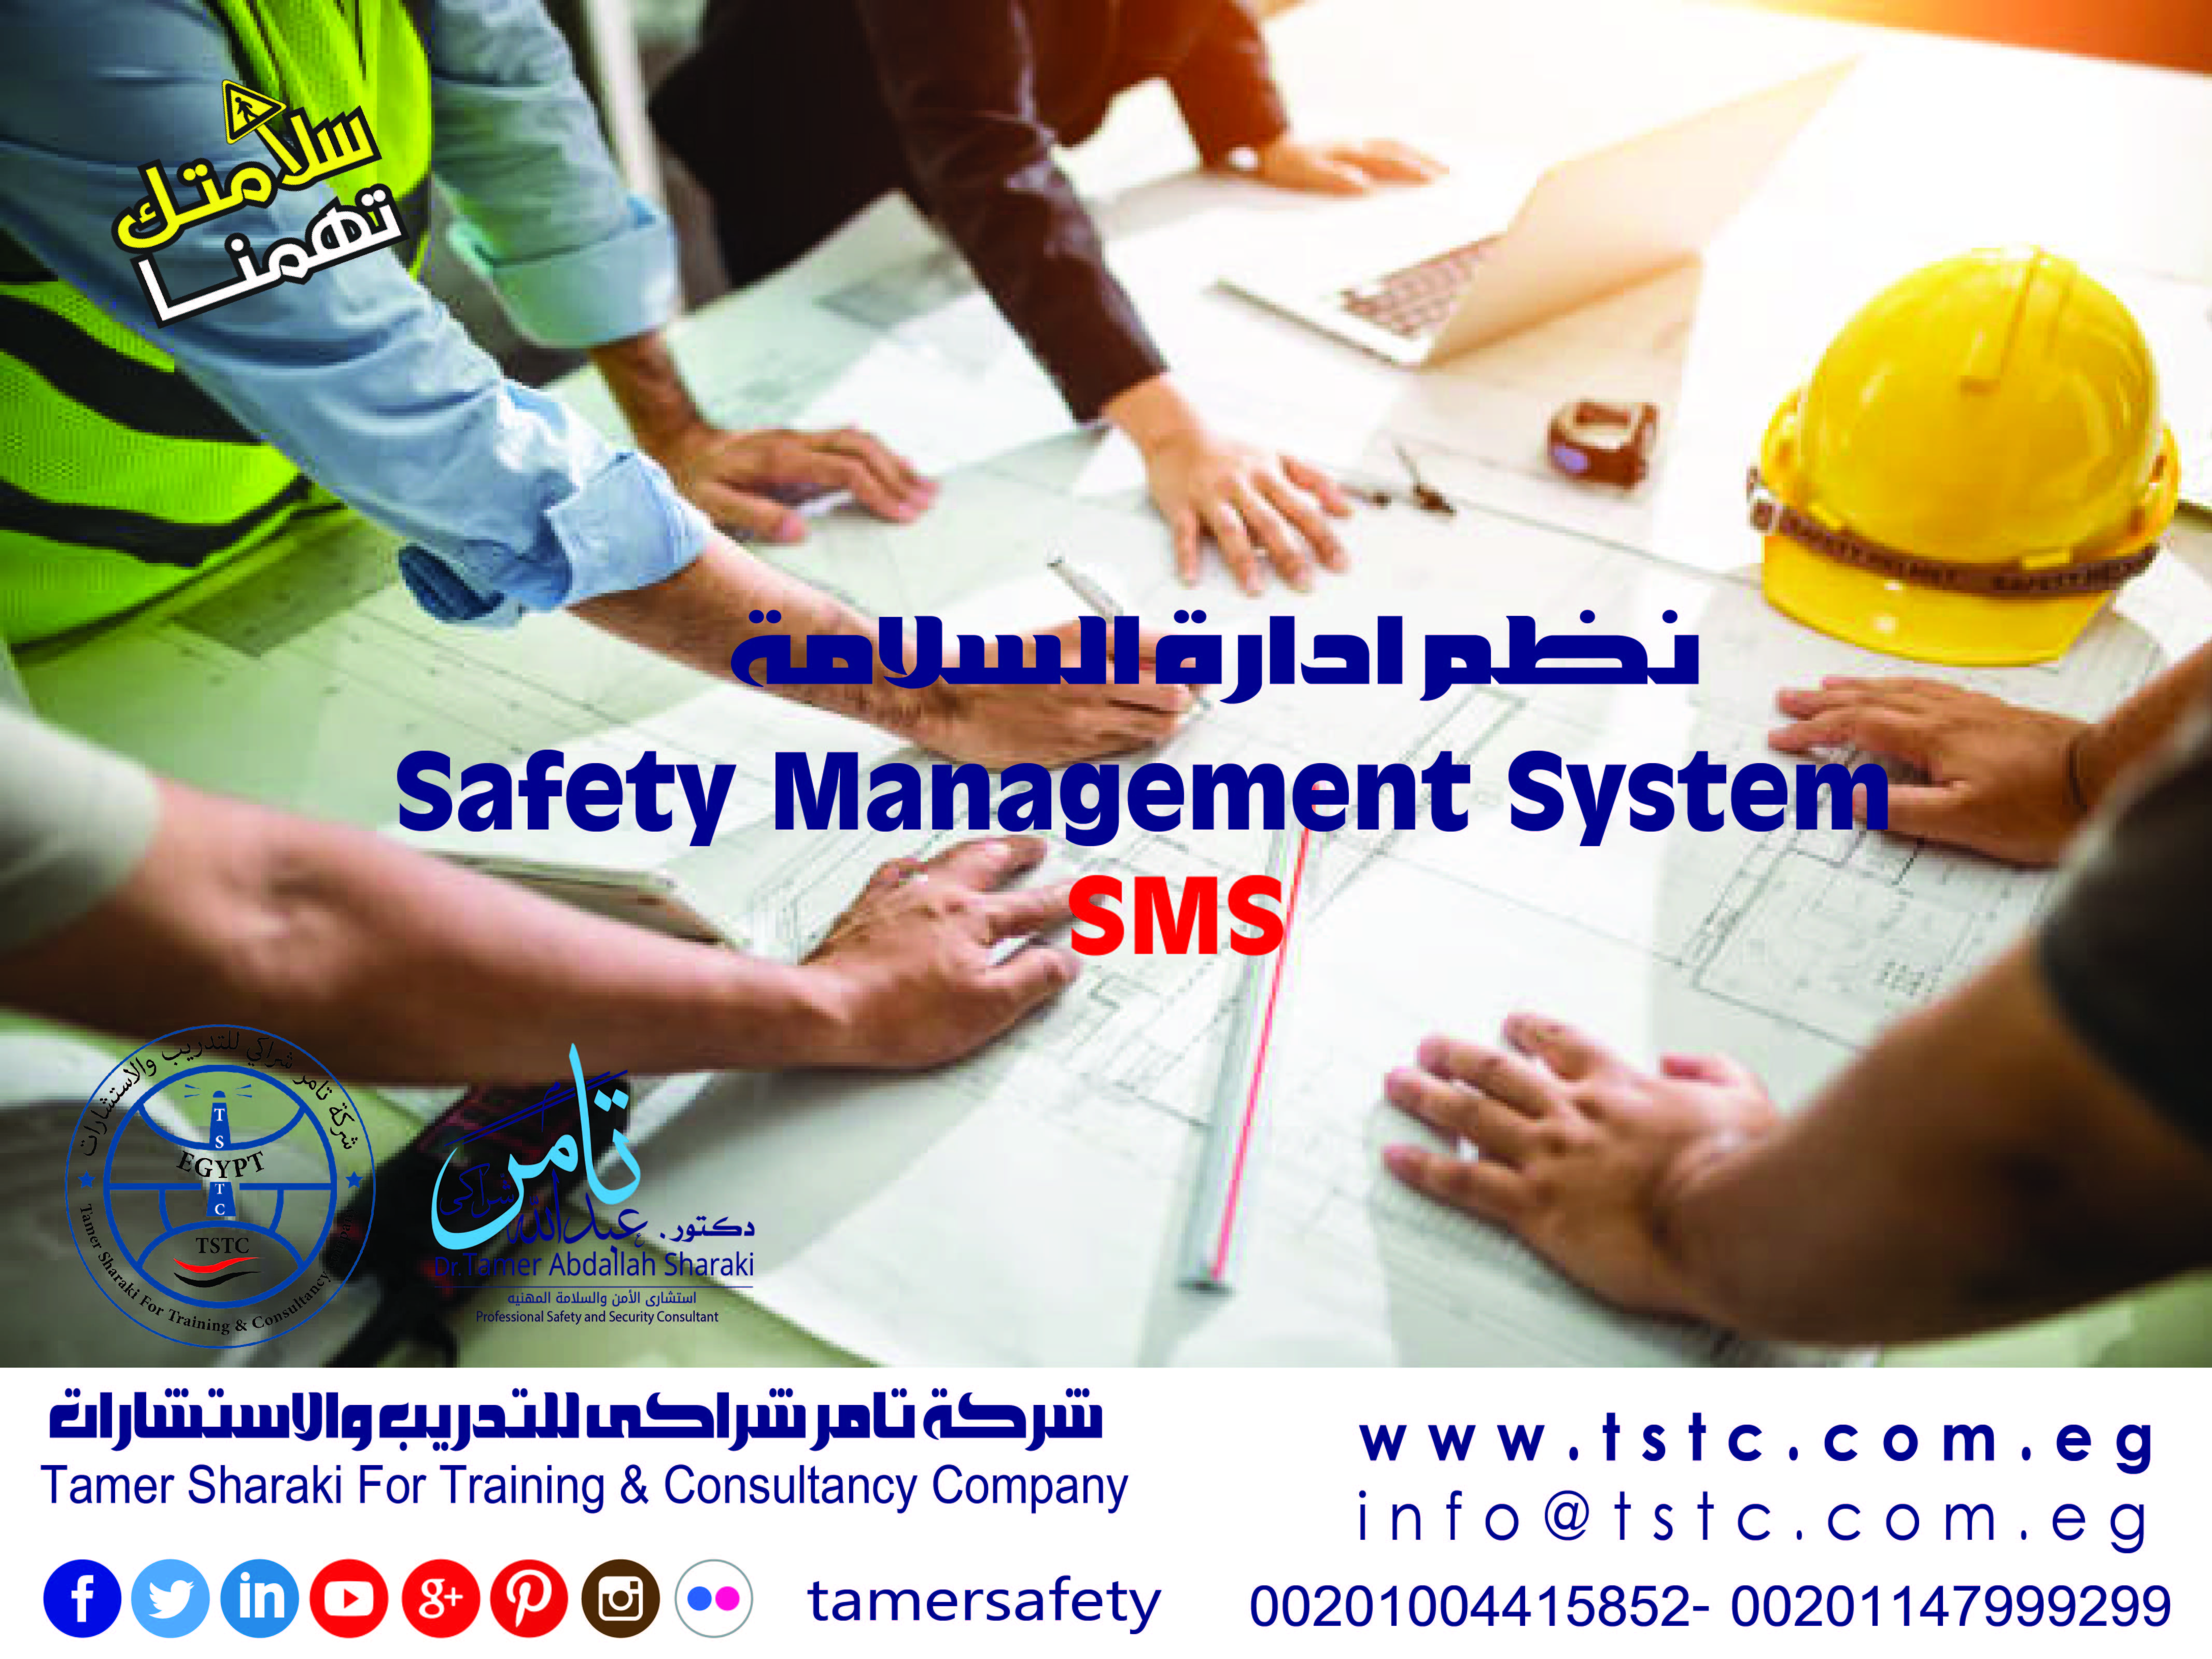 دورة نظم ادارة السلامة Safety Management System  SMS